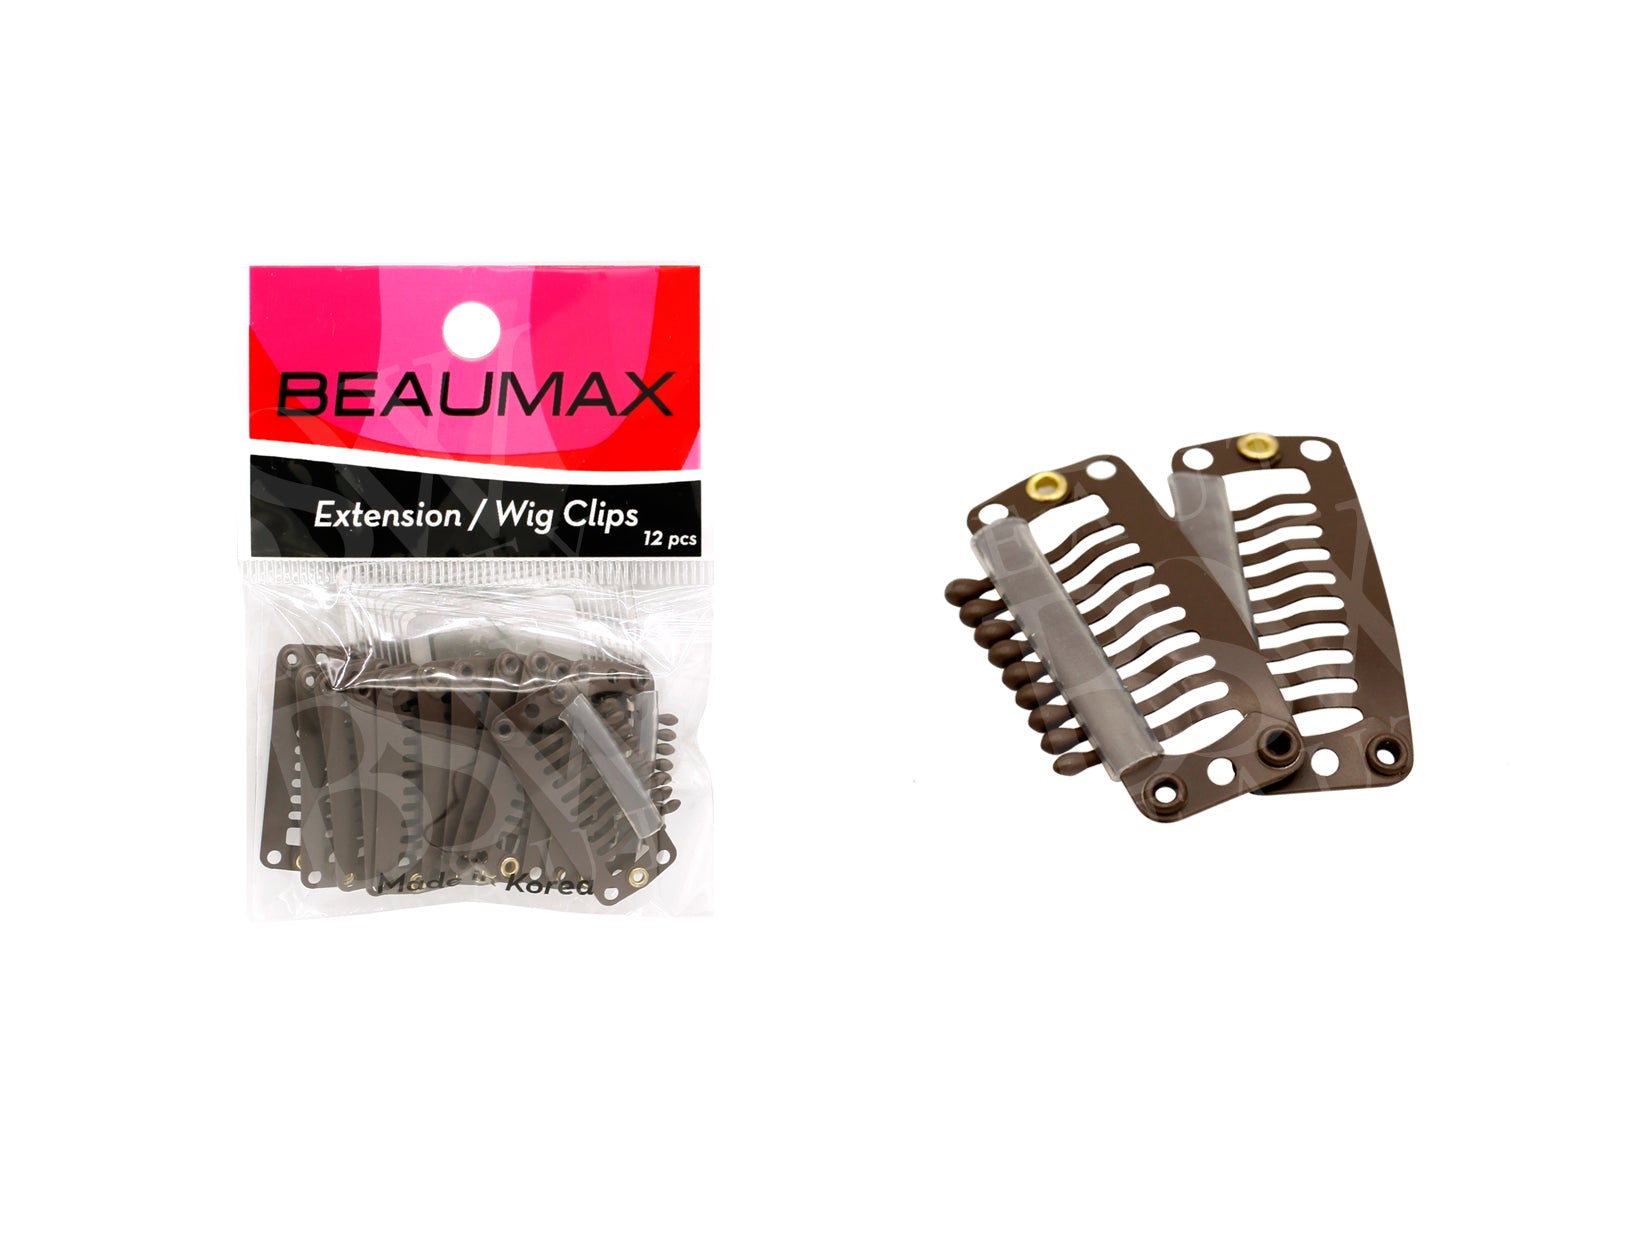 BEAUMAX COMB STYLE EXTENSION CLIP 12PCS